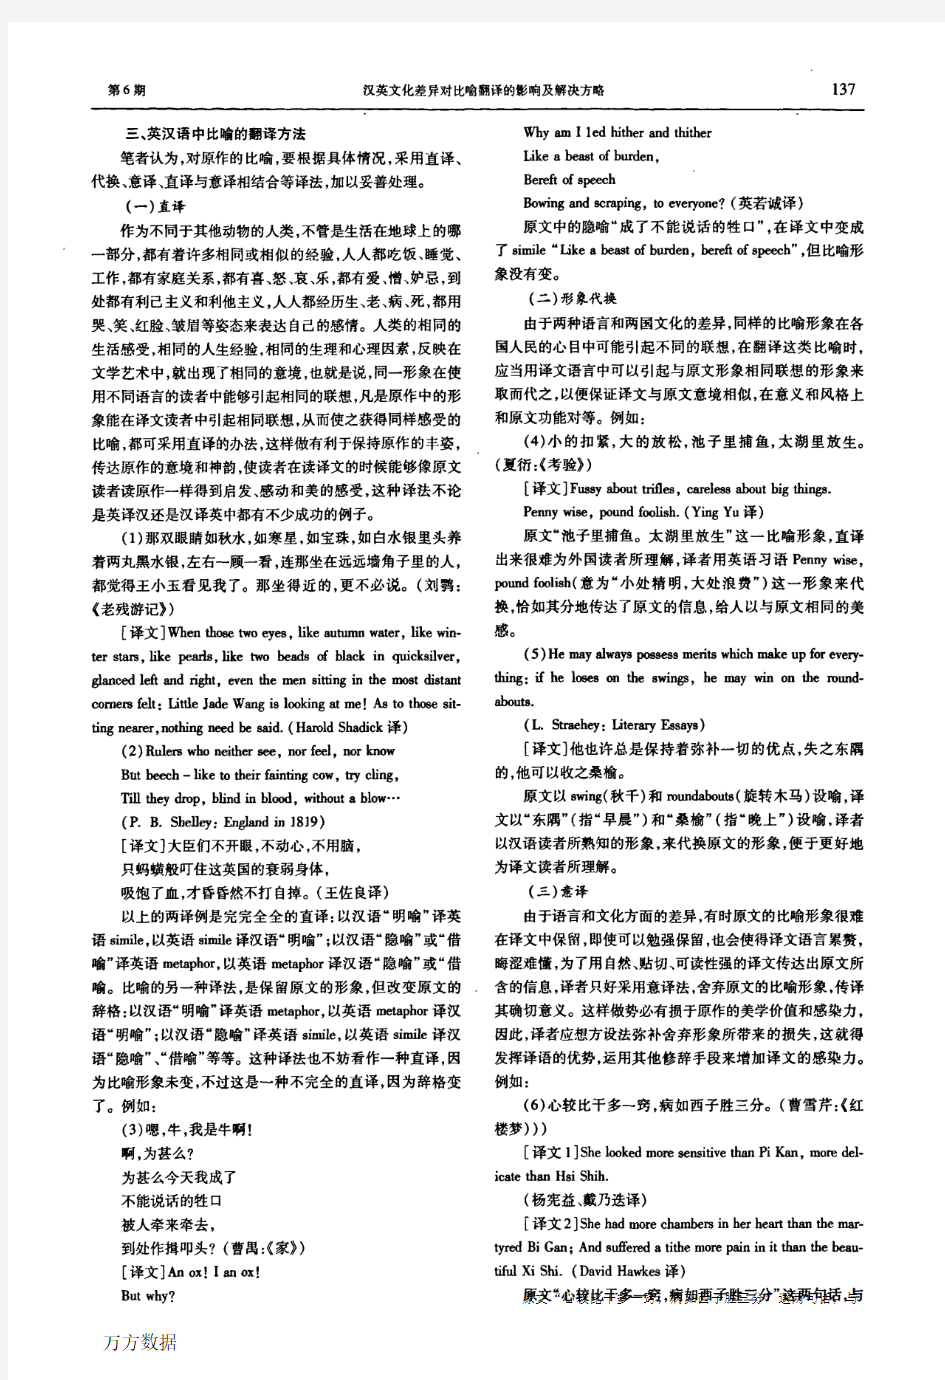 汉英文化差异对比喻翻译的影响及解决方略(1)